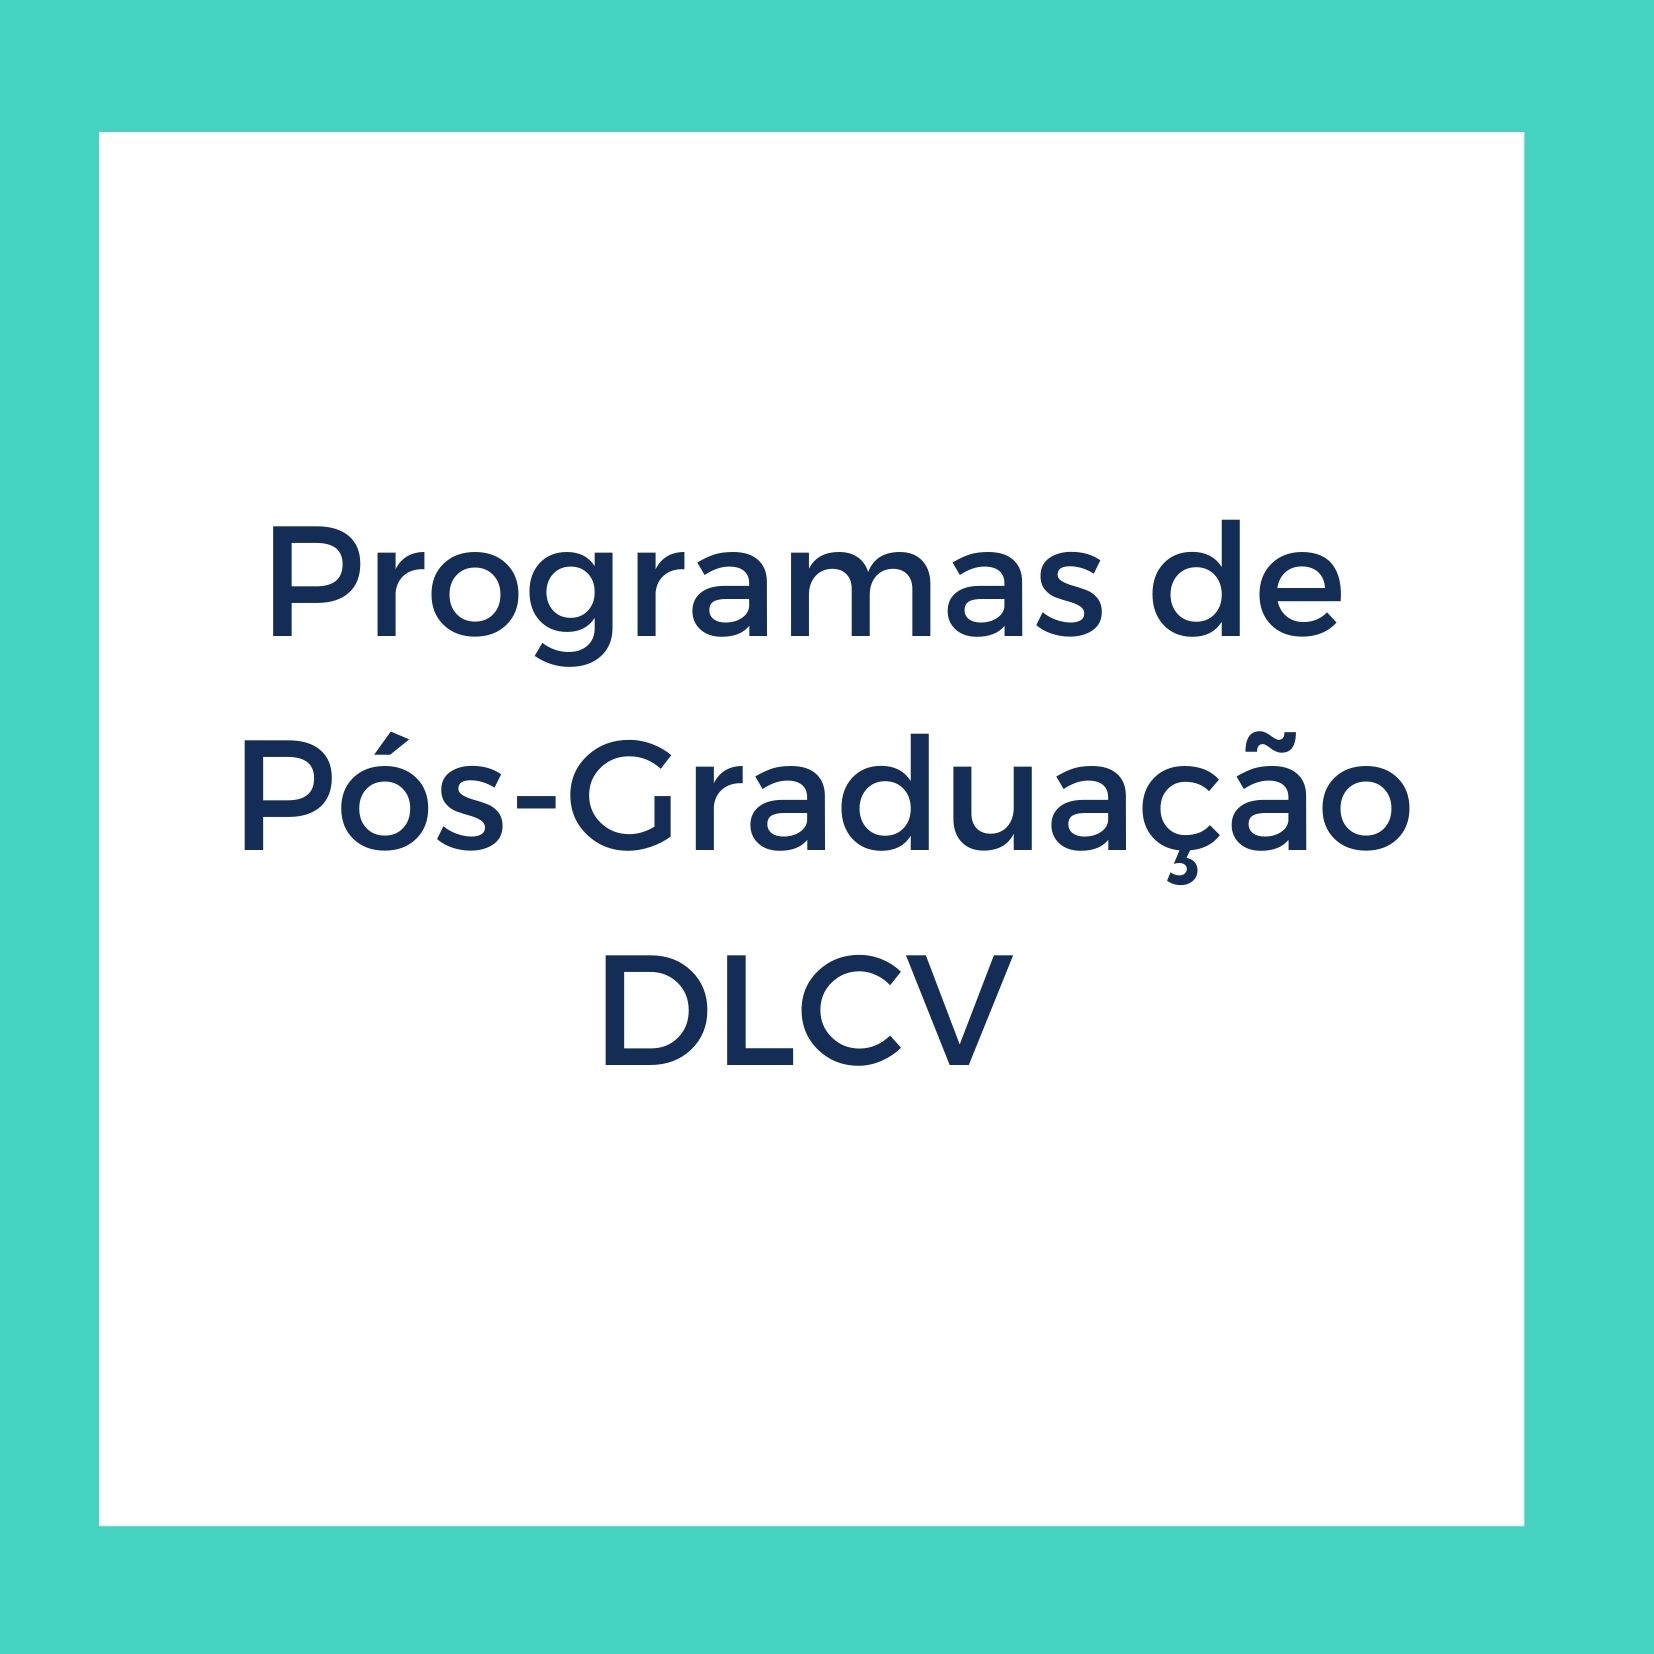 Programas de Pós-Graduação DLCV